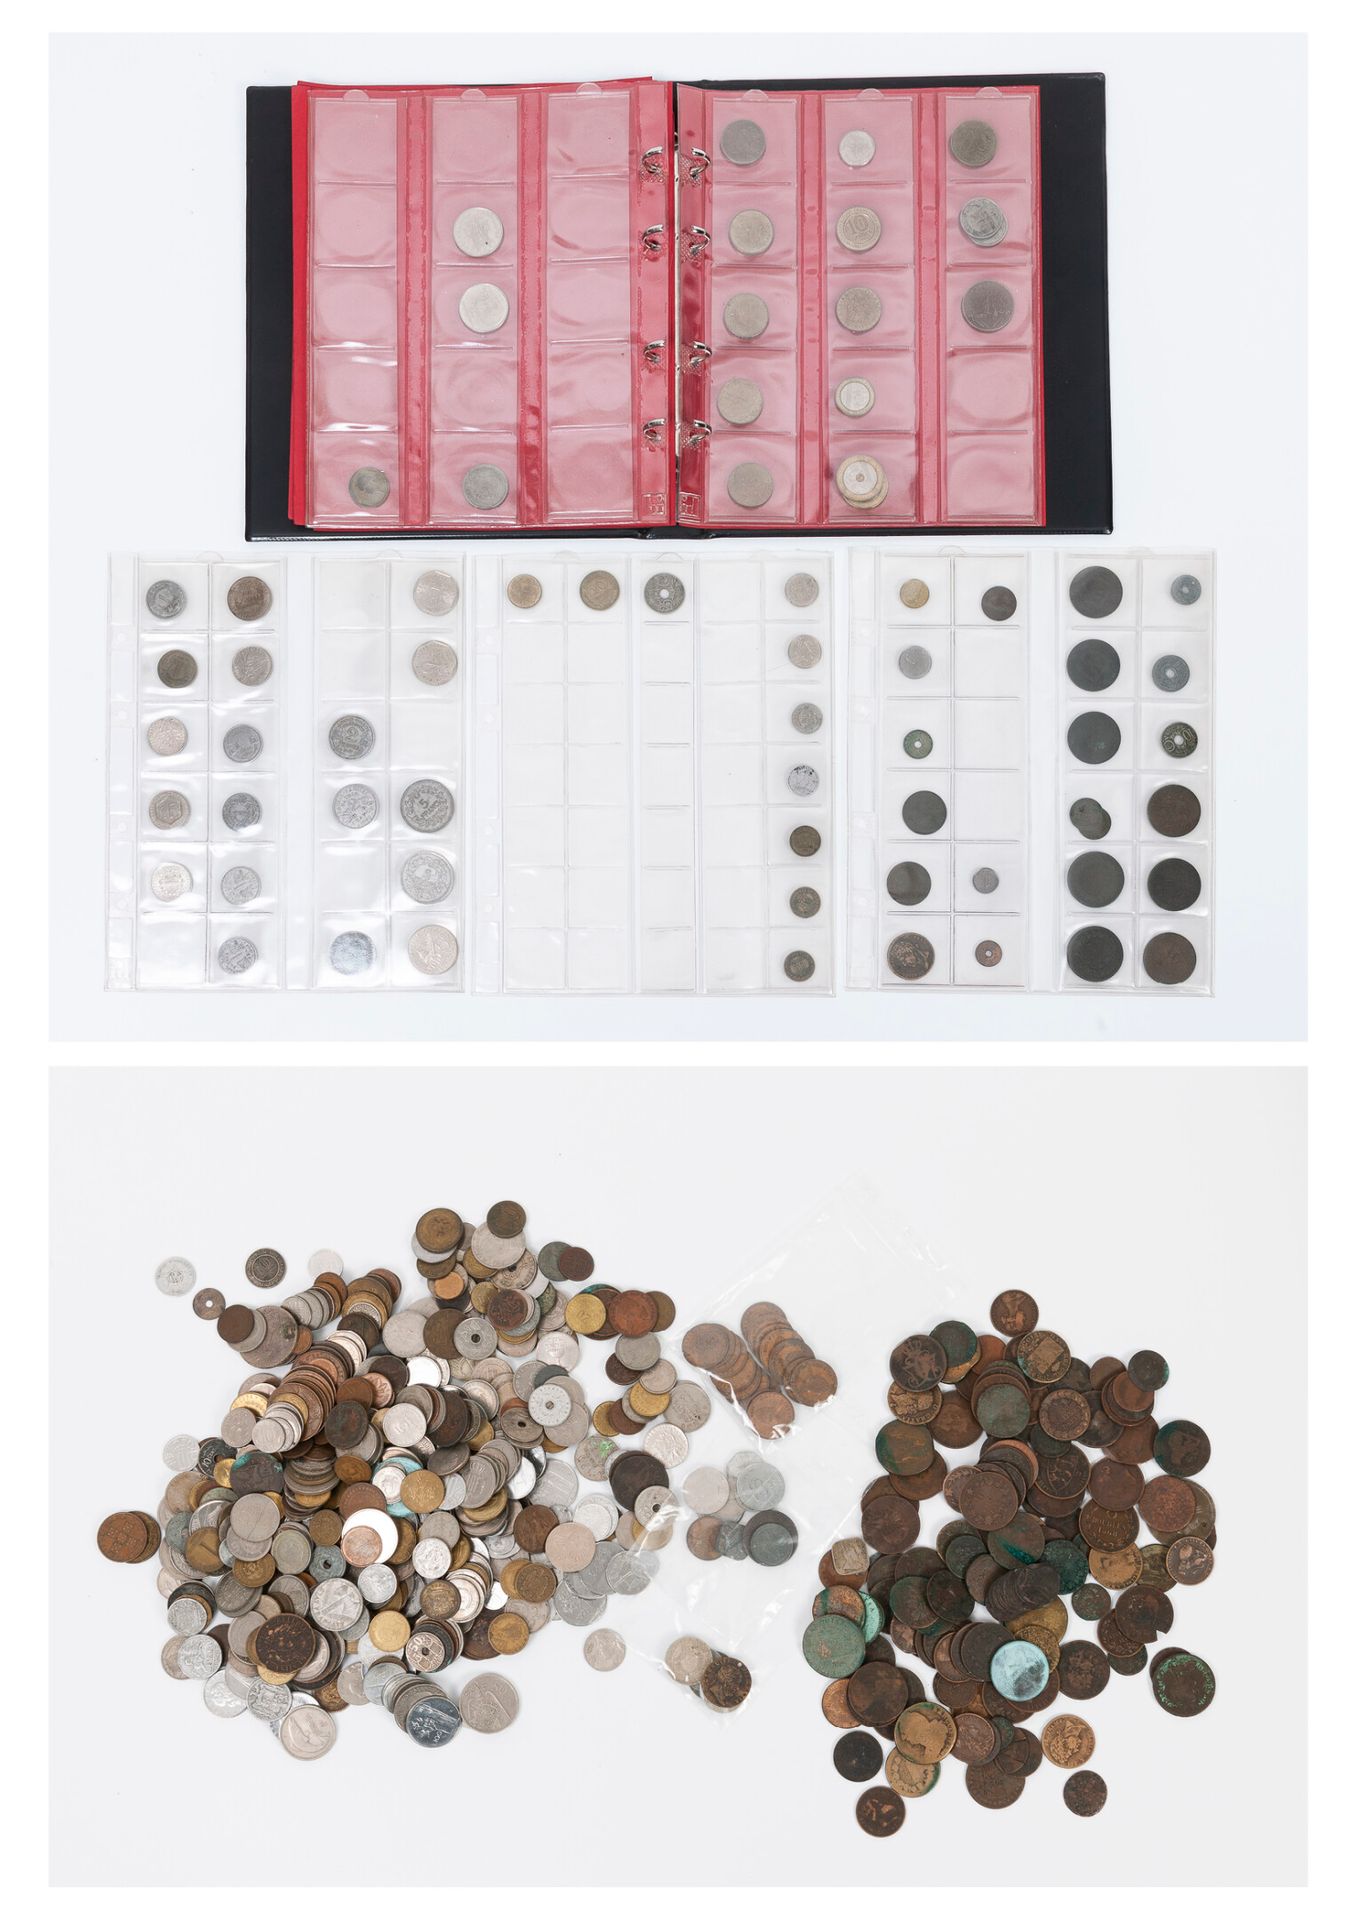 TOUS PAYS, XIXème-XXème siècles Monnaies et quelques jetons en métal ou cuivre.
&hellip;